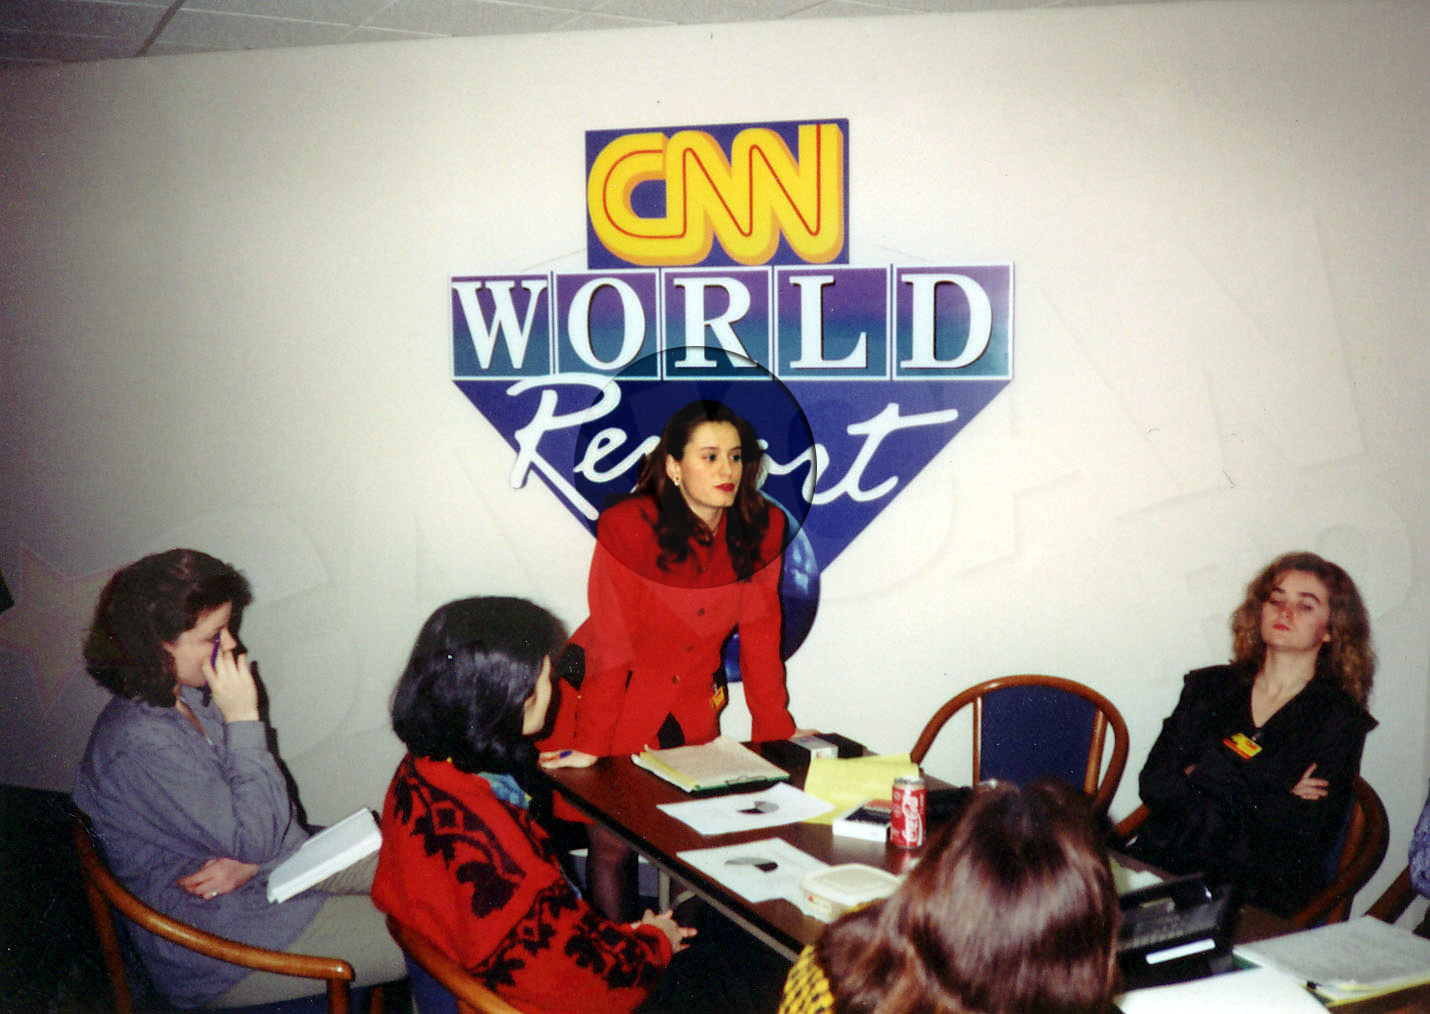 În timpul stagiului la CNN Andreea a văzut pentru prima dată un prompter adevărat şi a făcut cunoştinţă cu întreaga tehnologie folosită pentru a realiza şi prezenta o ştire de calitate.